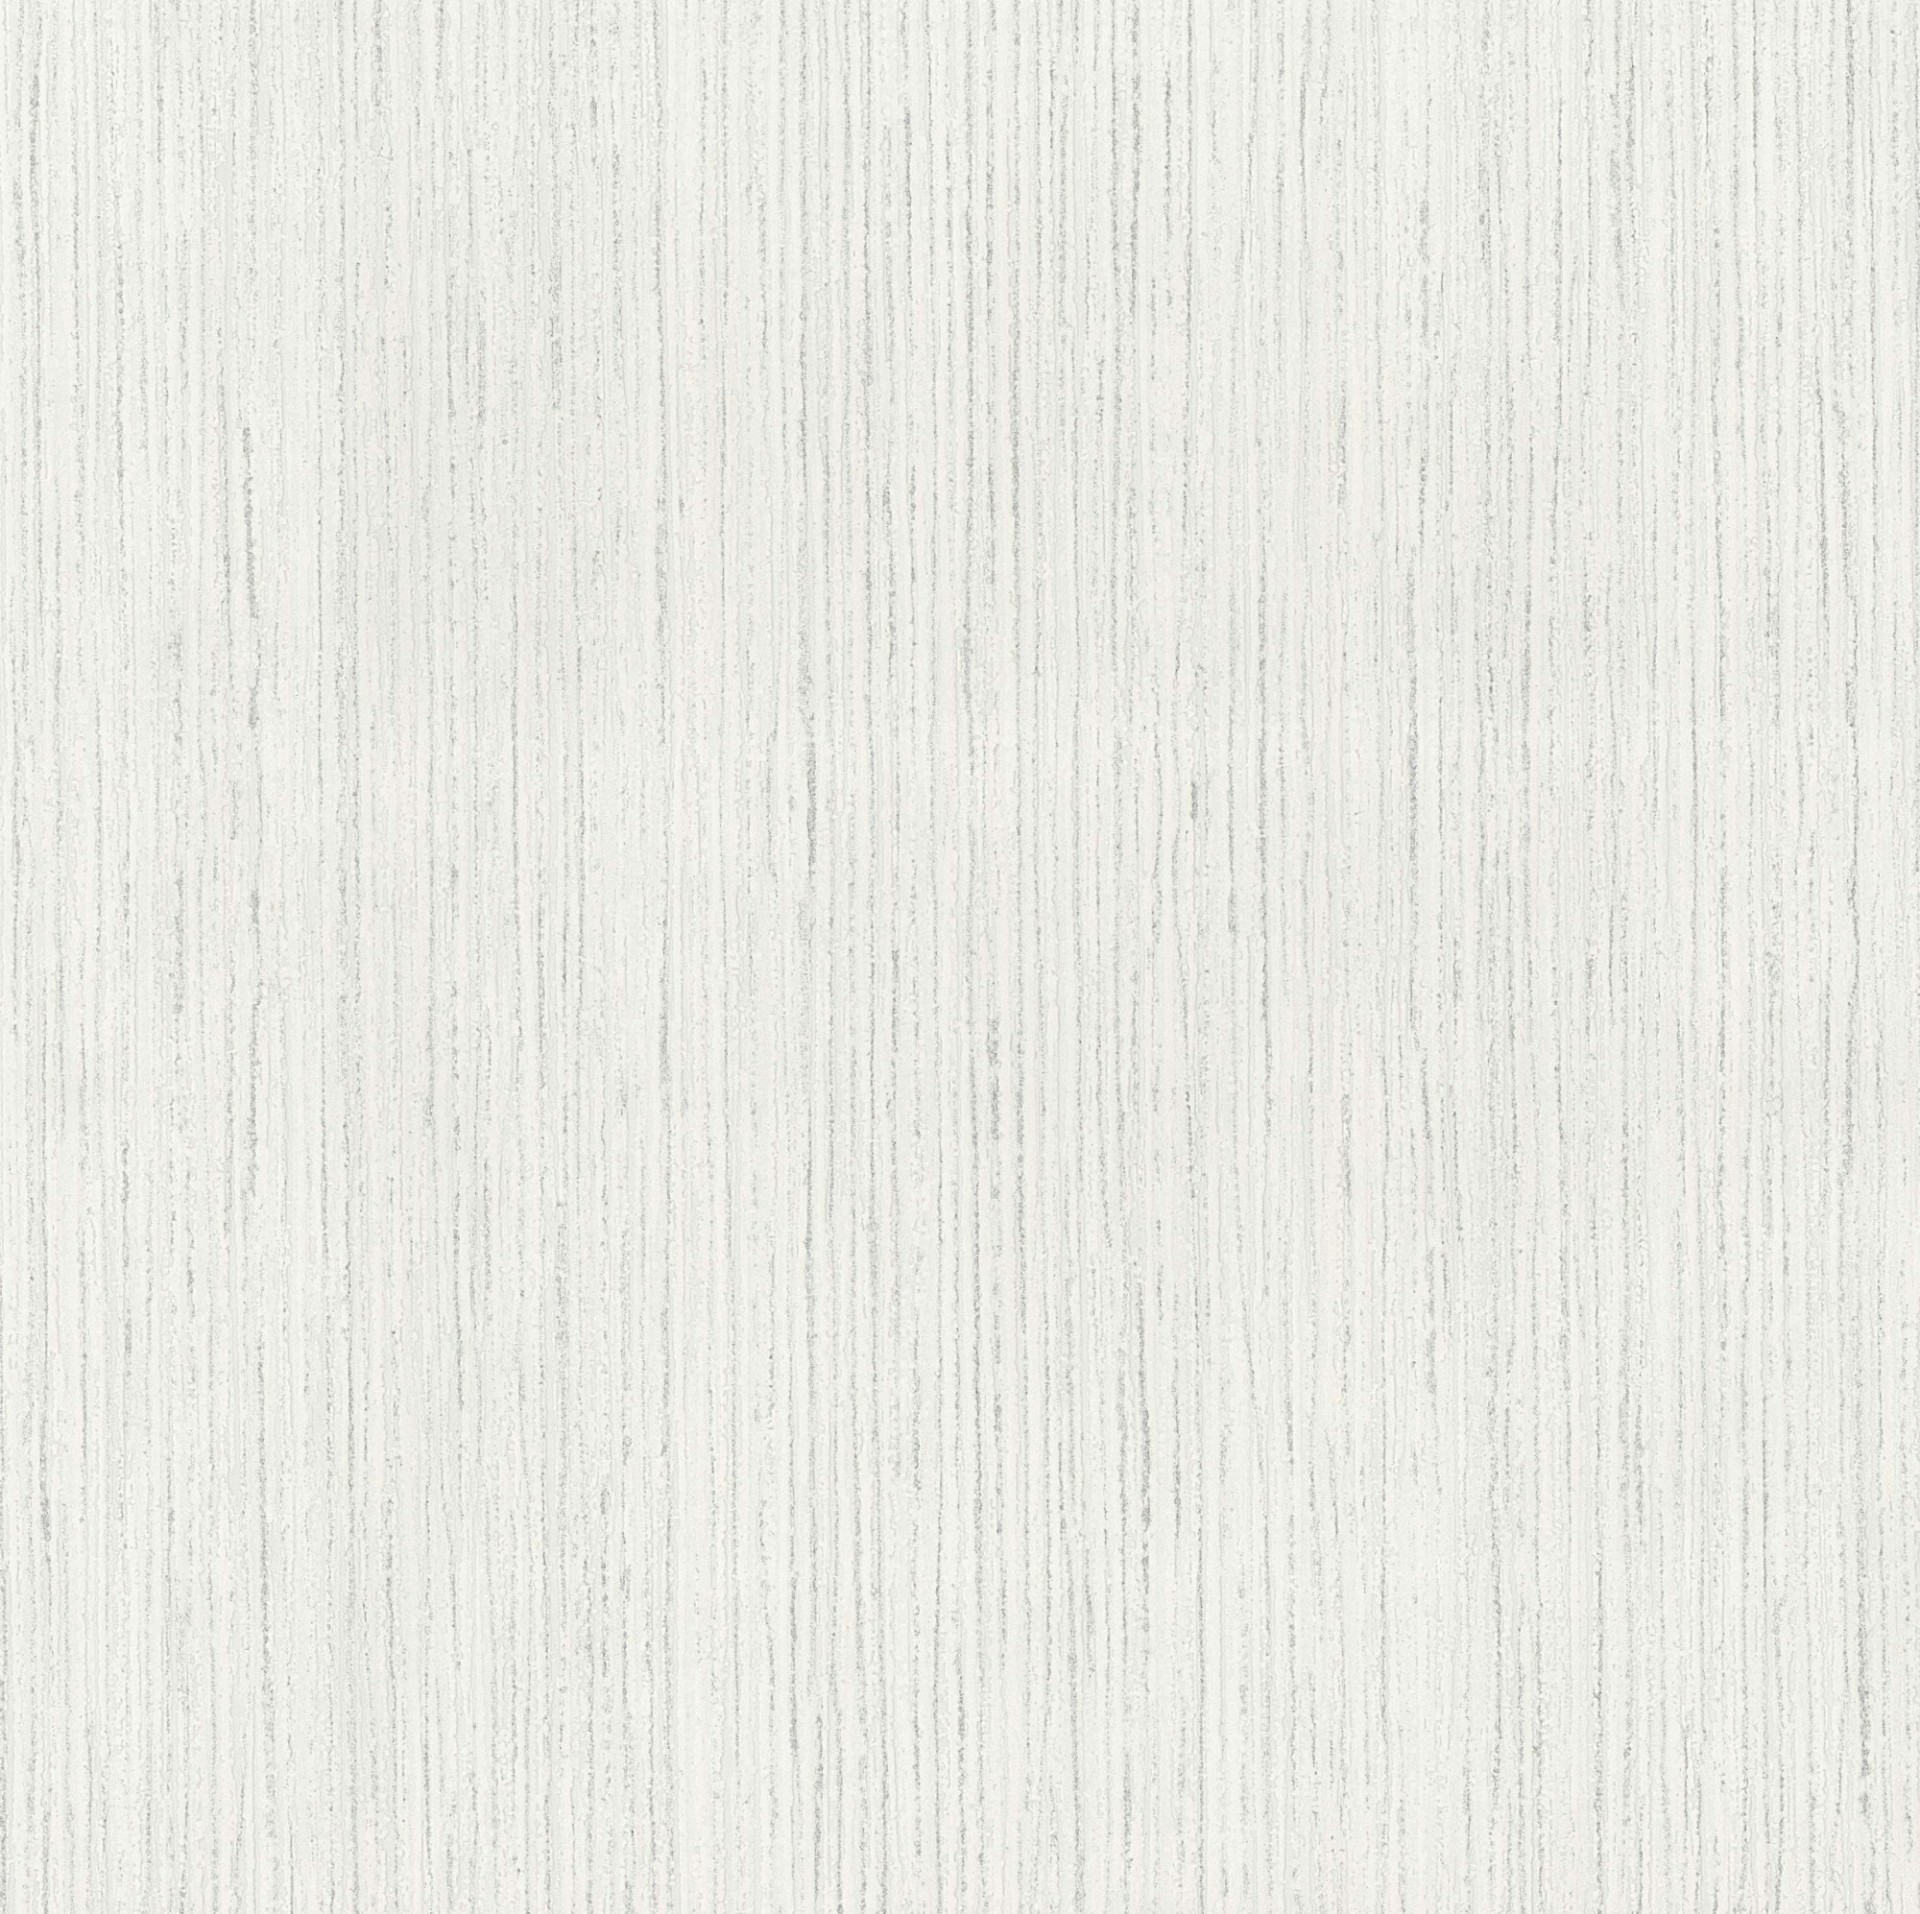 1920x1914 Silver Birch Texture White Blown Vinyl Wallpaper by P+S International  13195-60